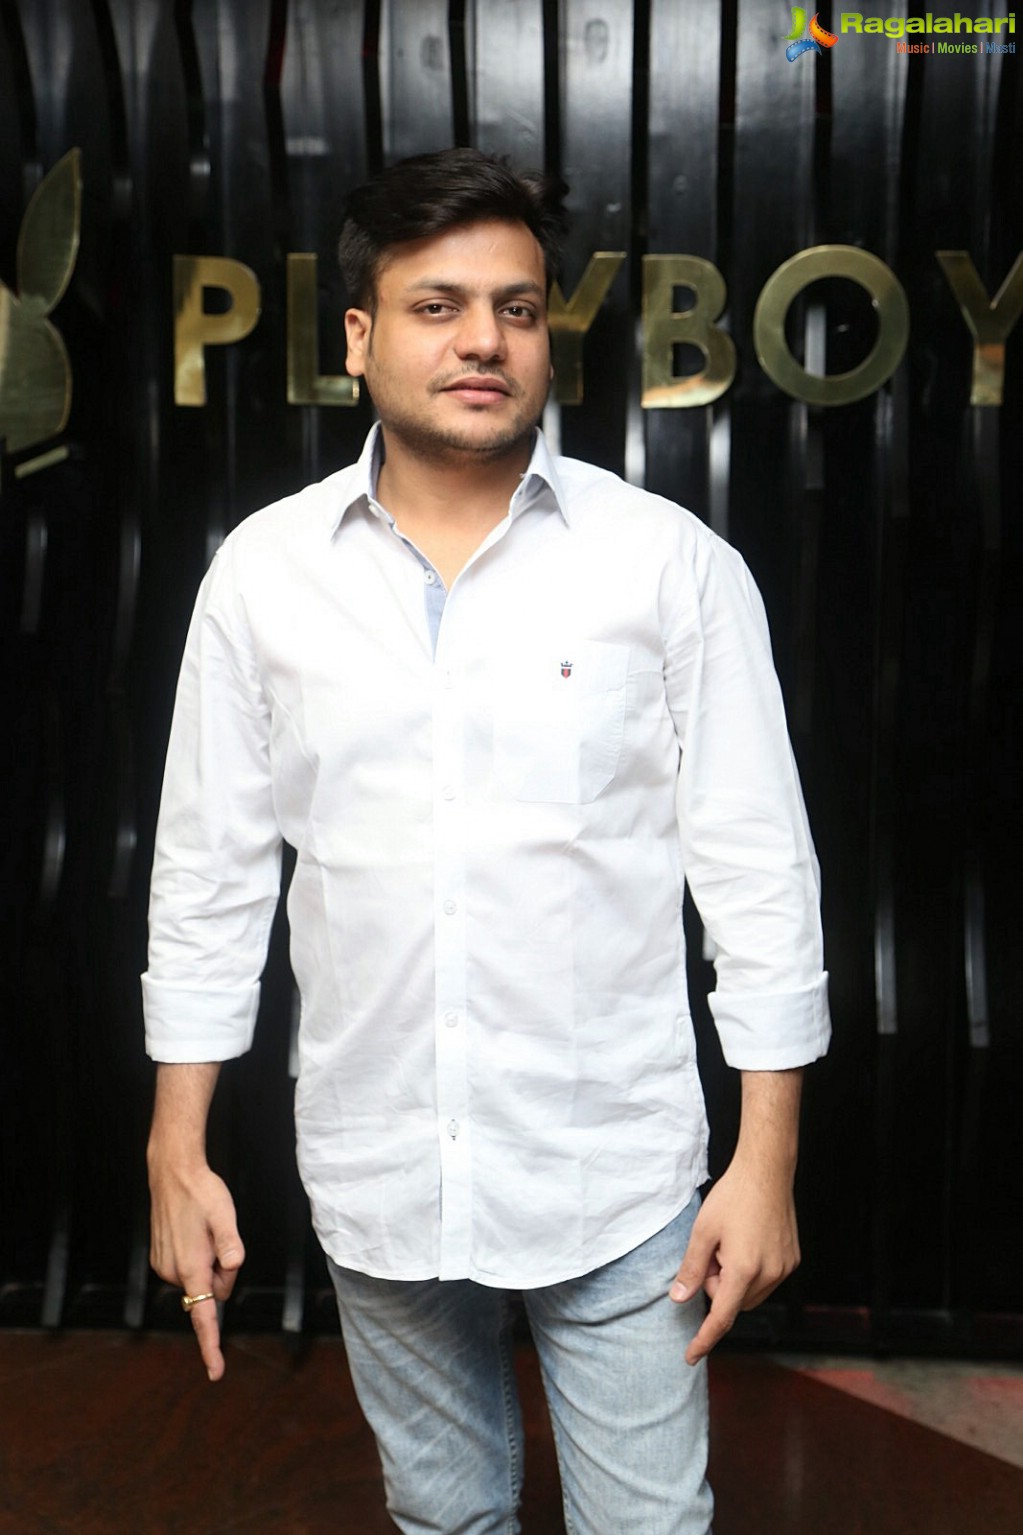 Playboy Club, Hyderabad (Feb. 18, 2017)